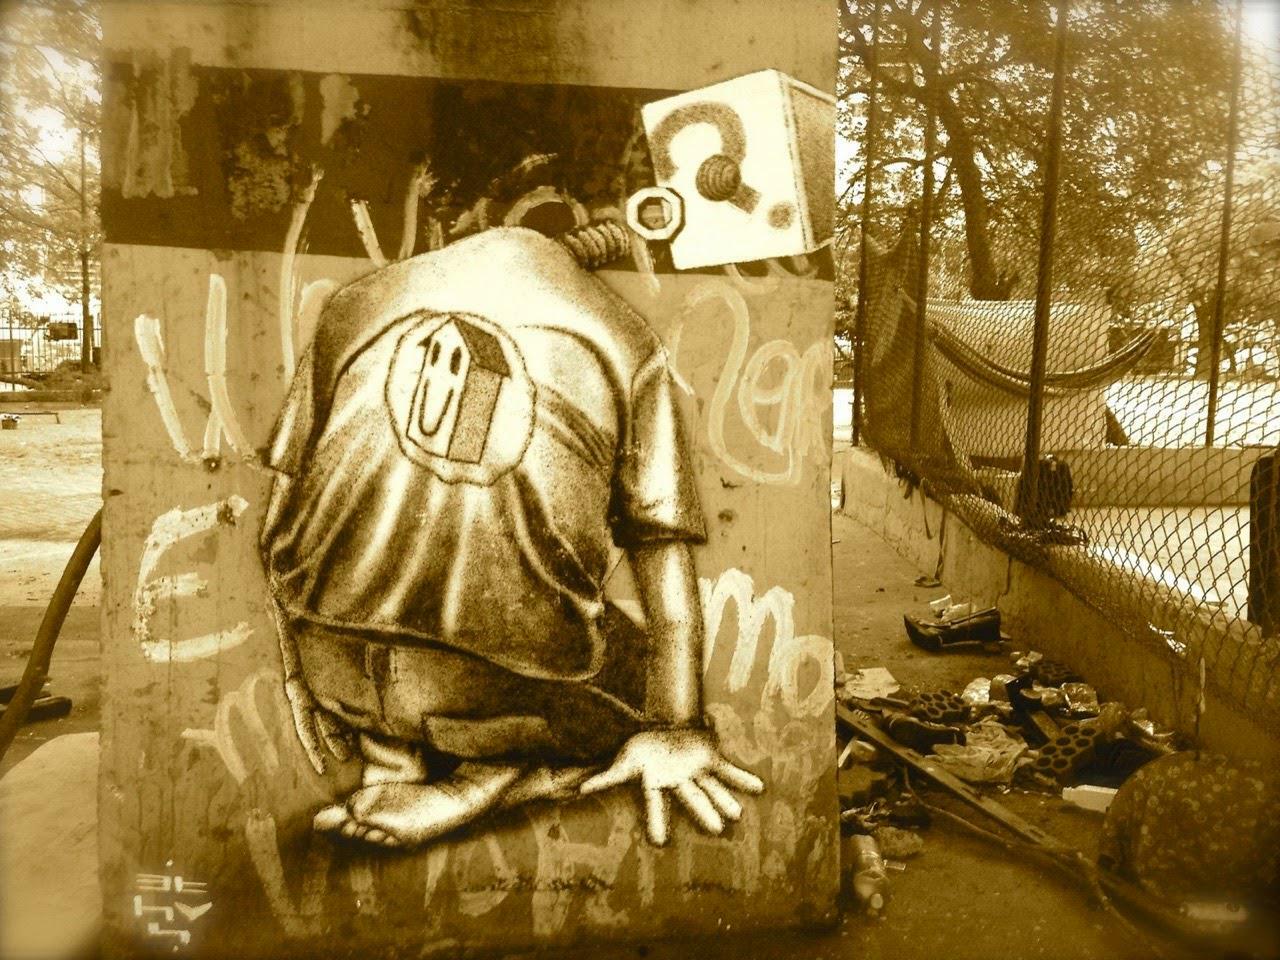 Streetart by Ethos in São Paulo (Brazil)

#streetart #urbanart #mural #art #graffiti http://t.co/YxqFpe3VTd